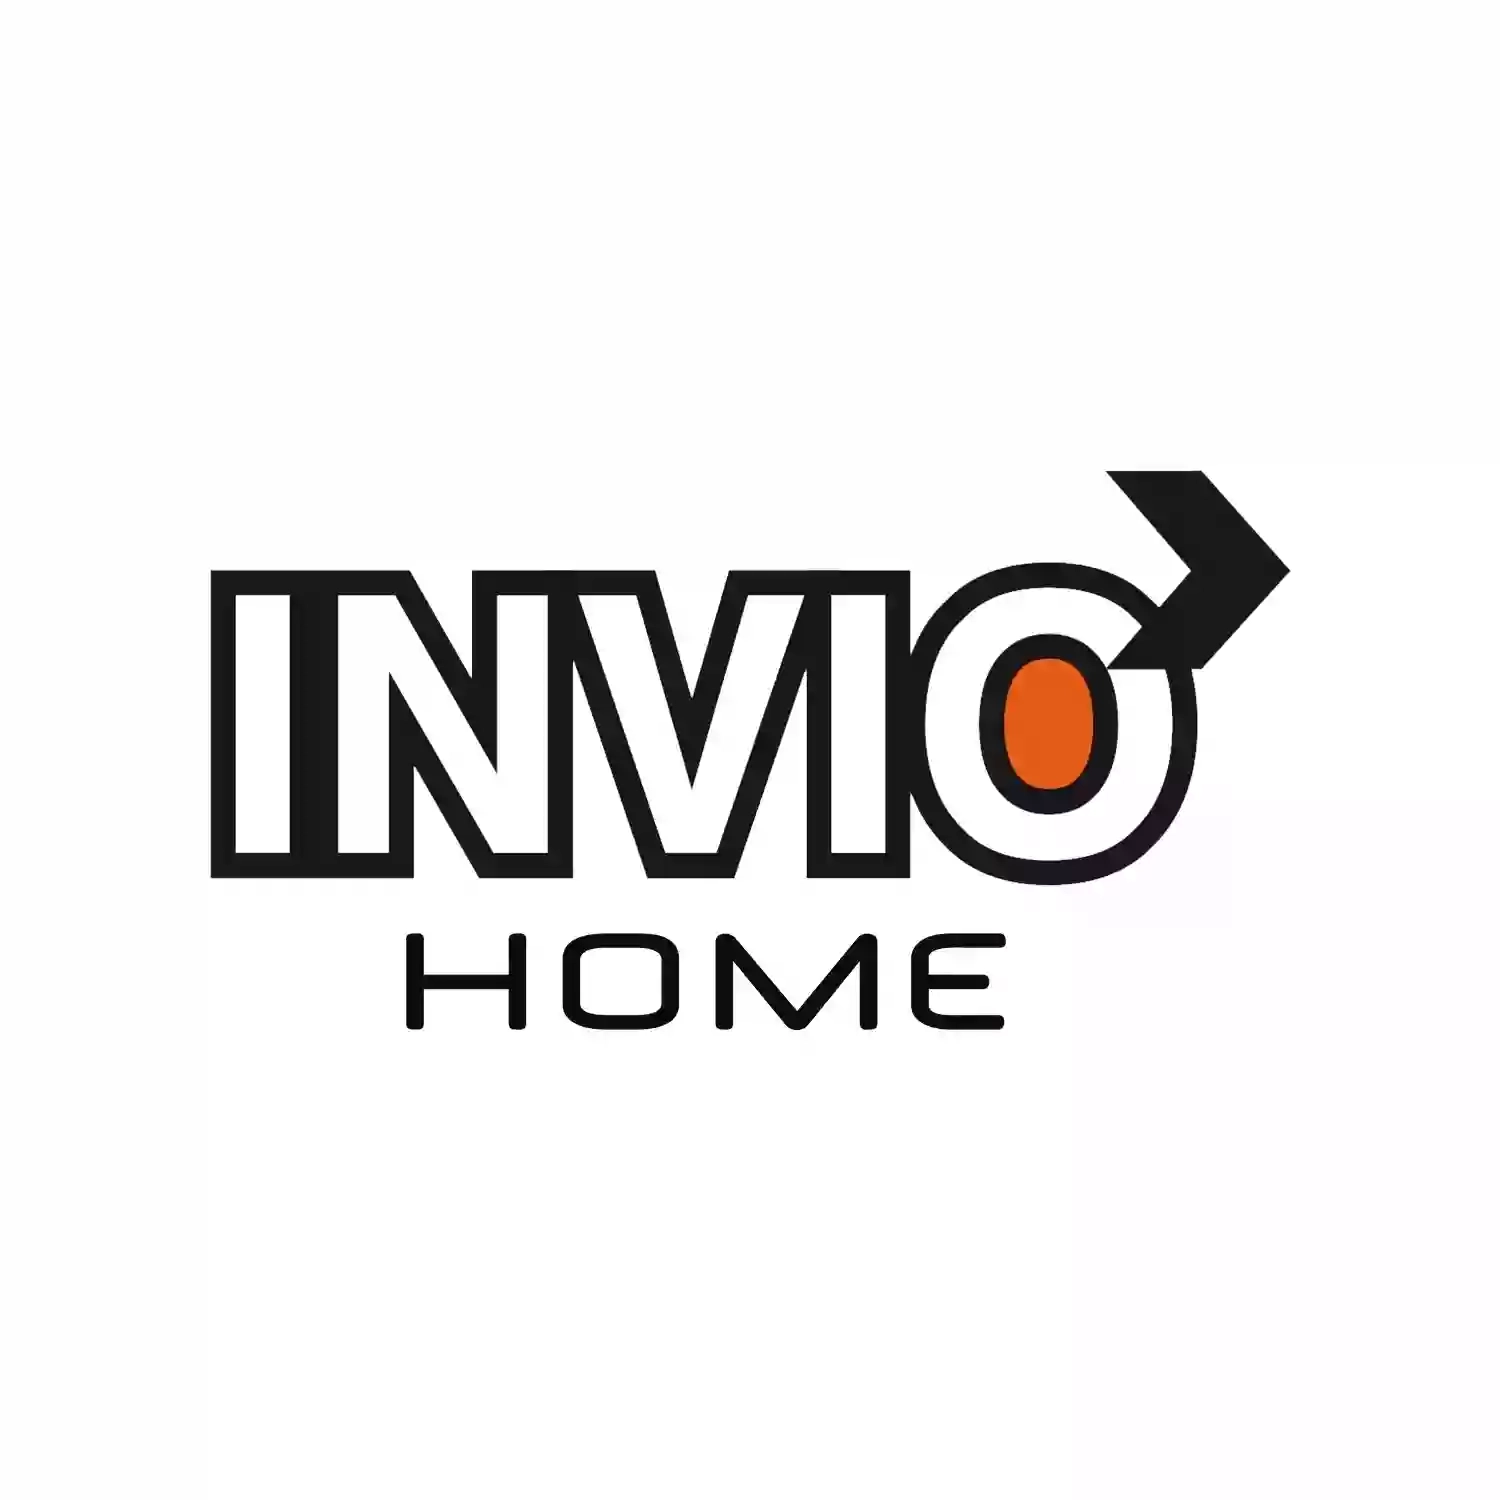 Invio Home